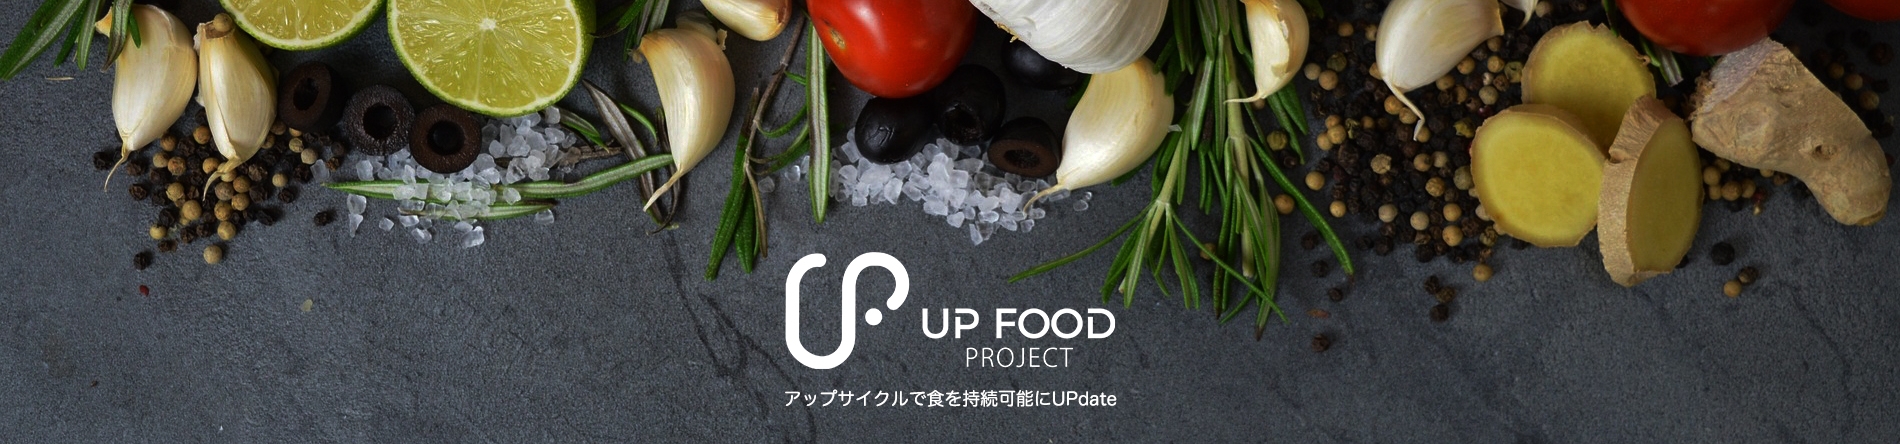 UP FOOD PROJECT ヘッダー画像